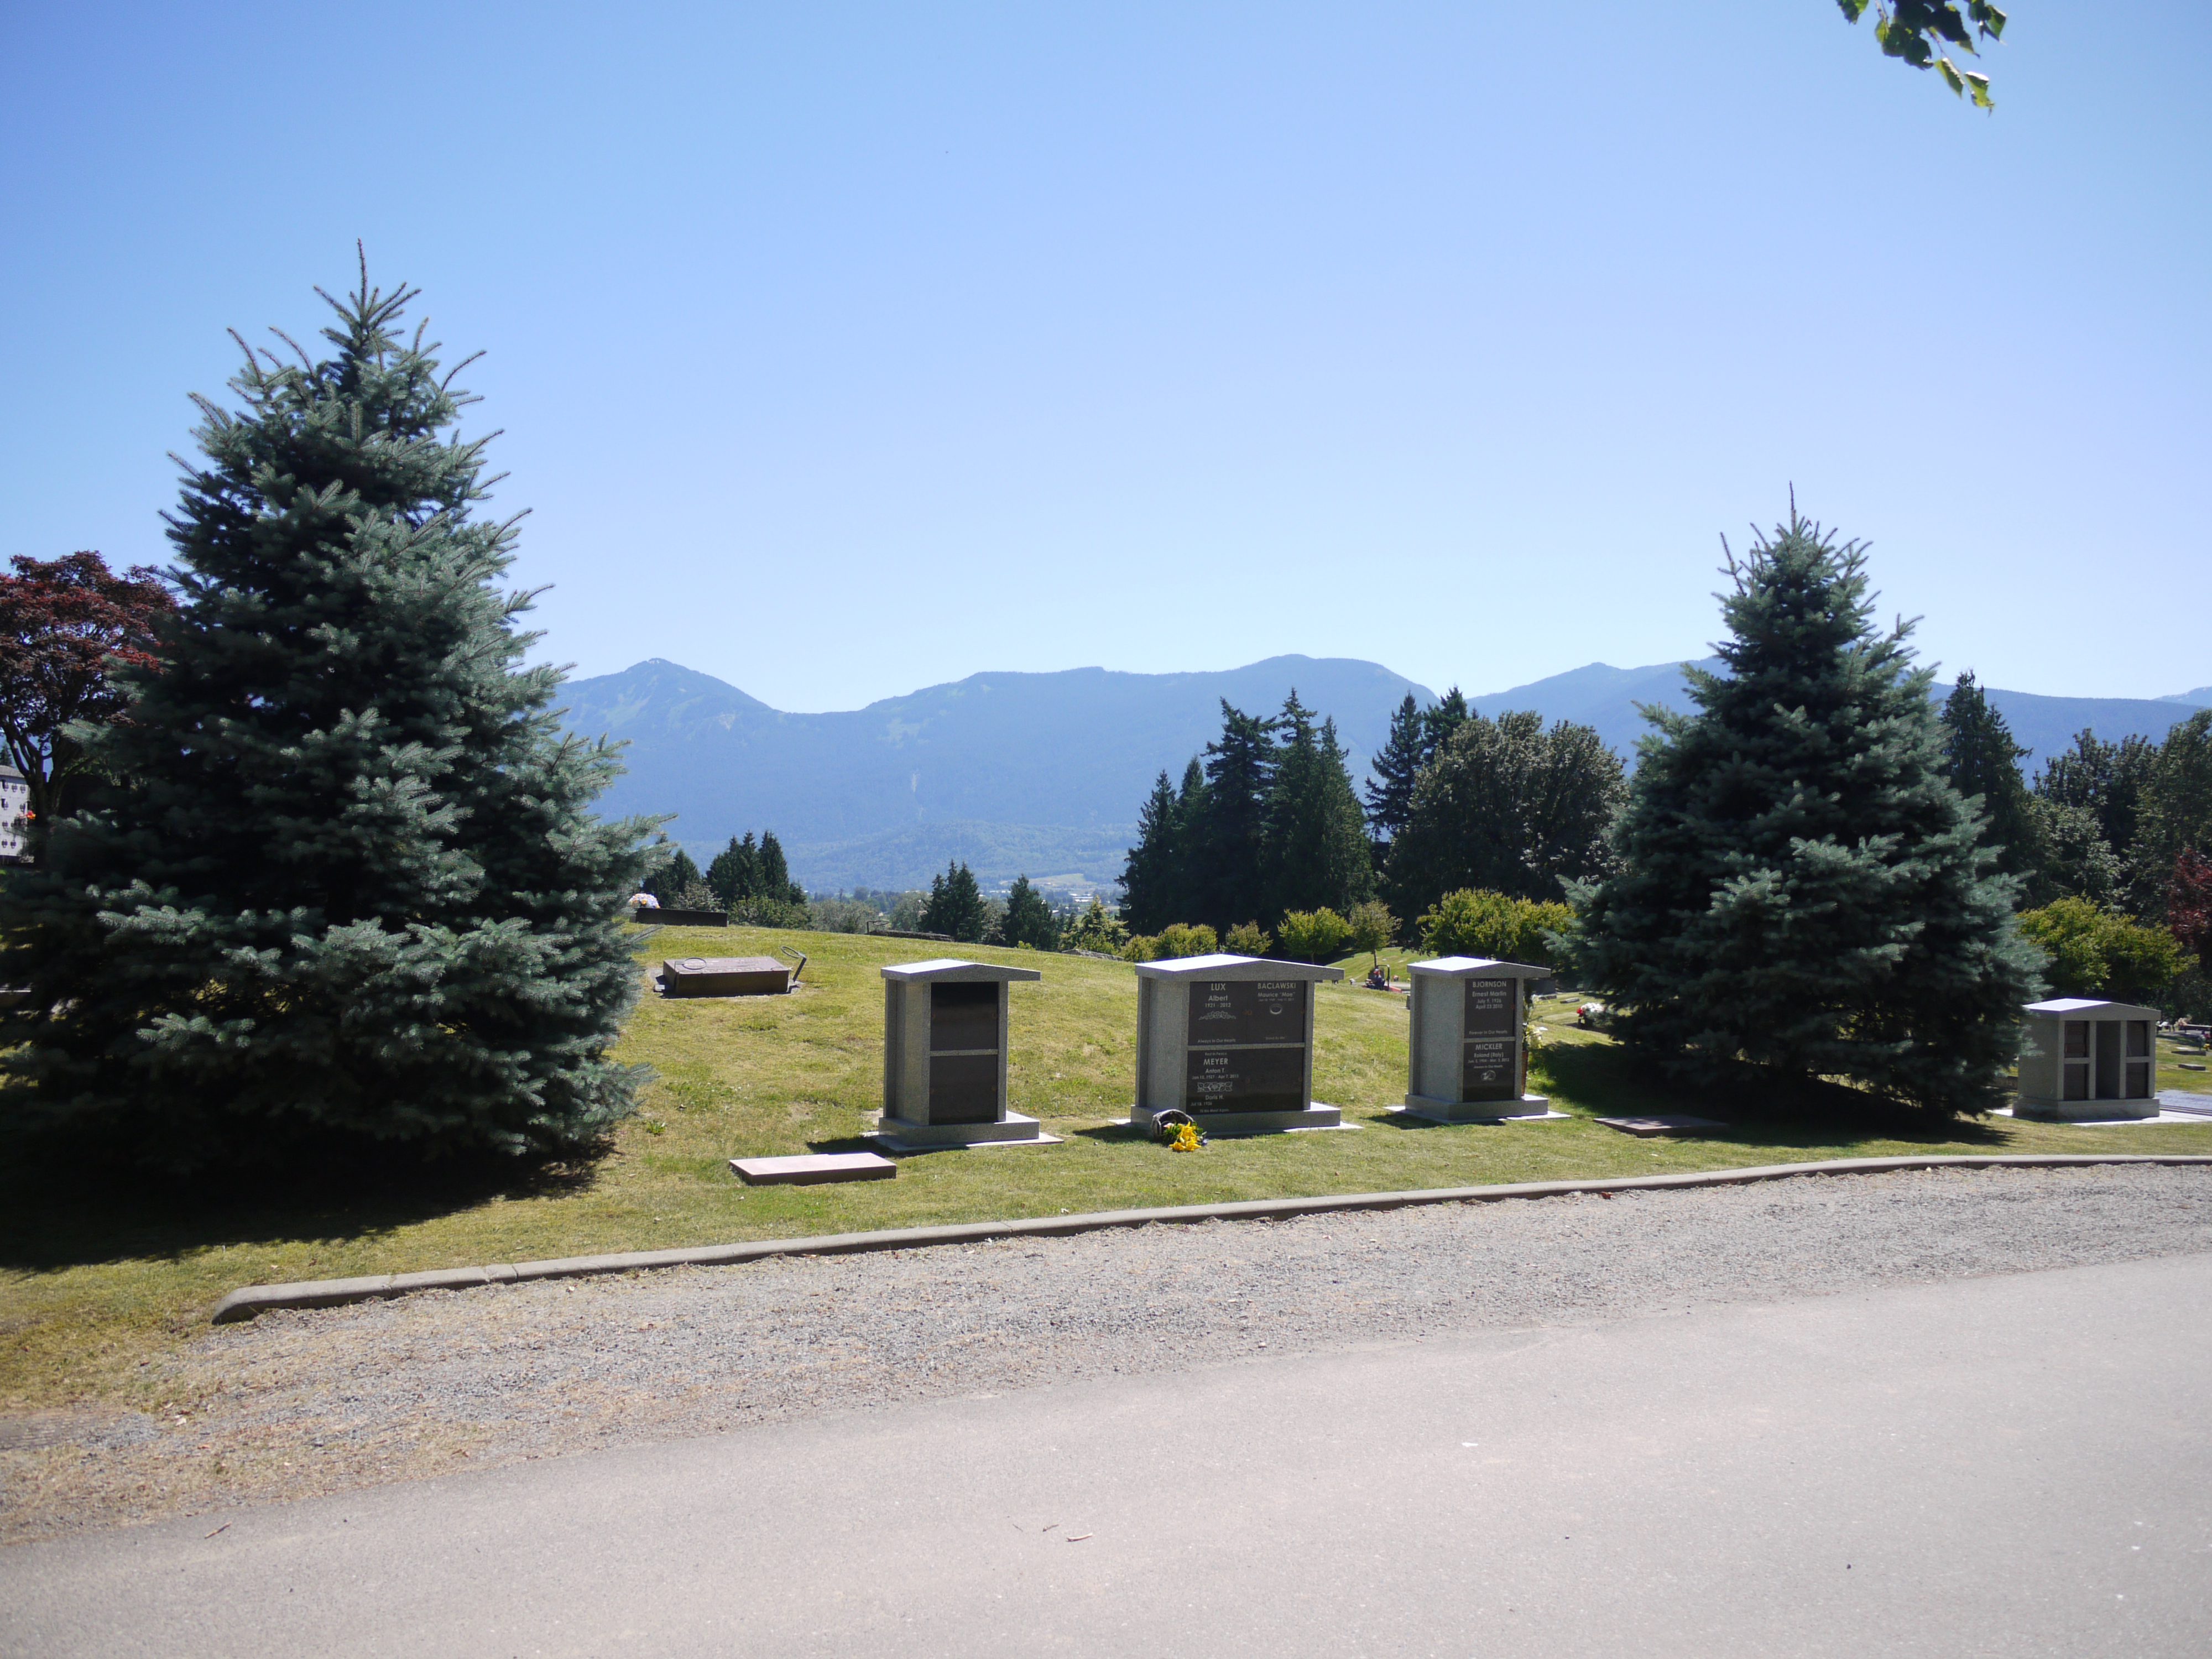 Chilliwack Cemeteries